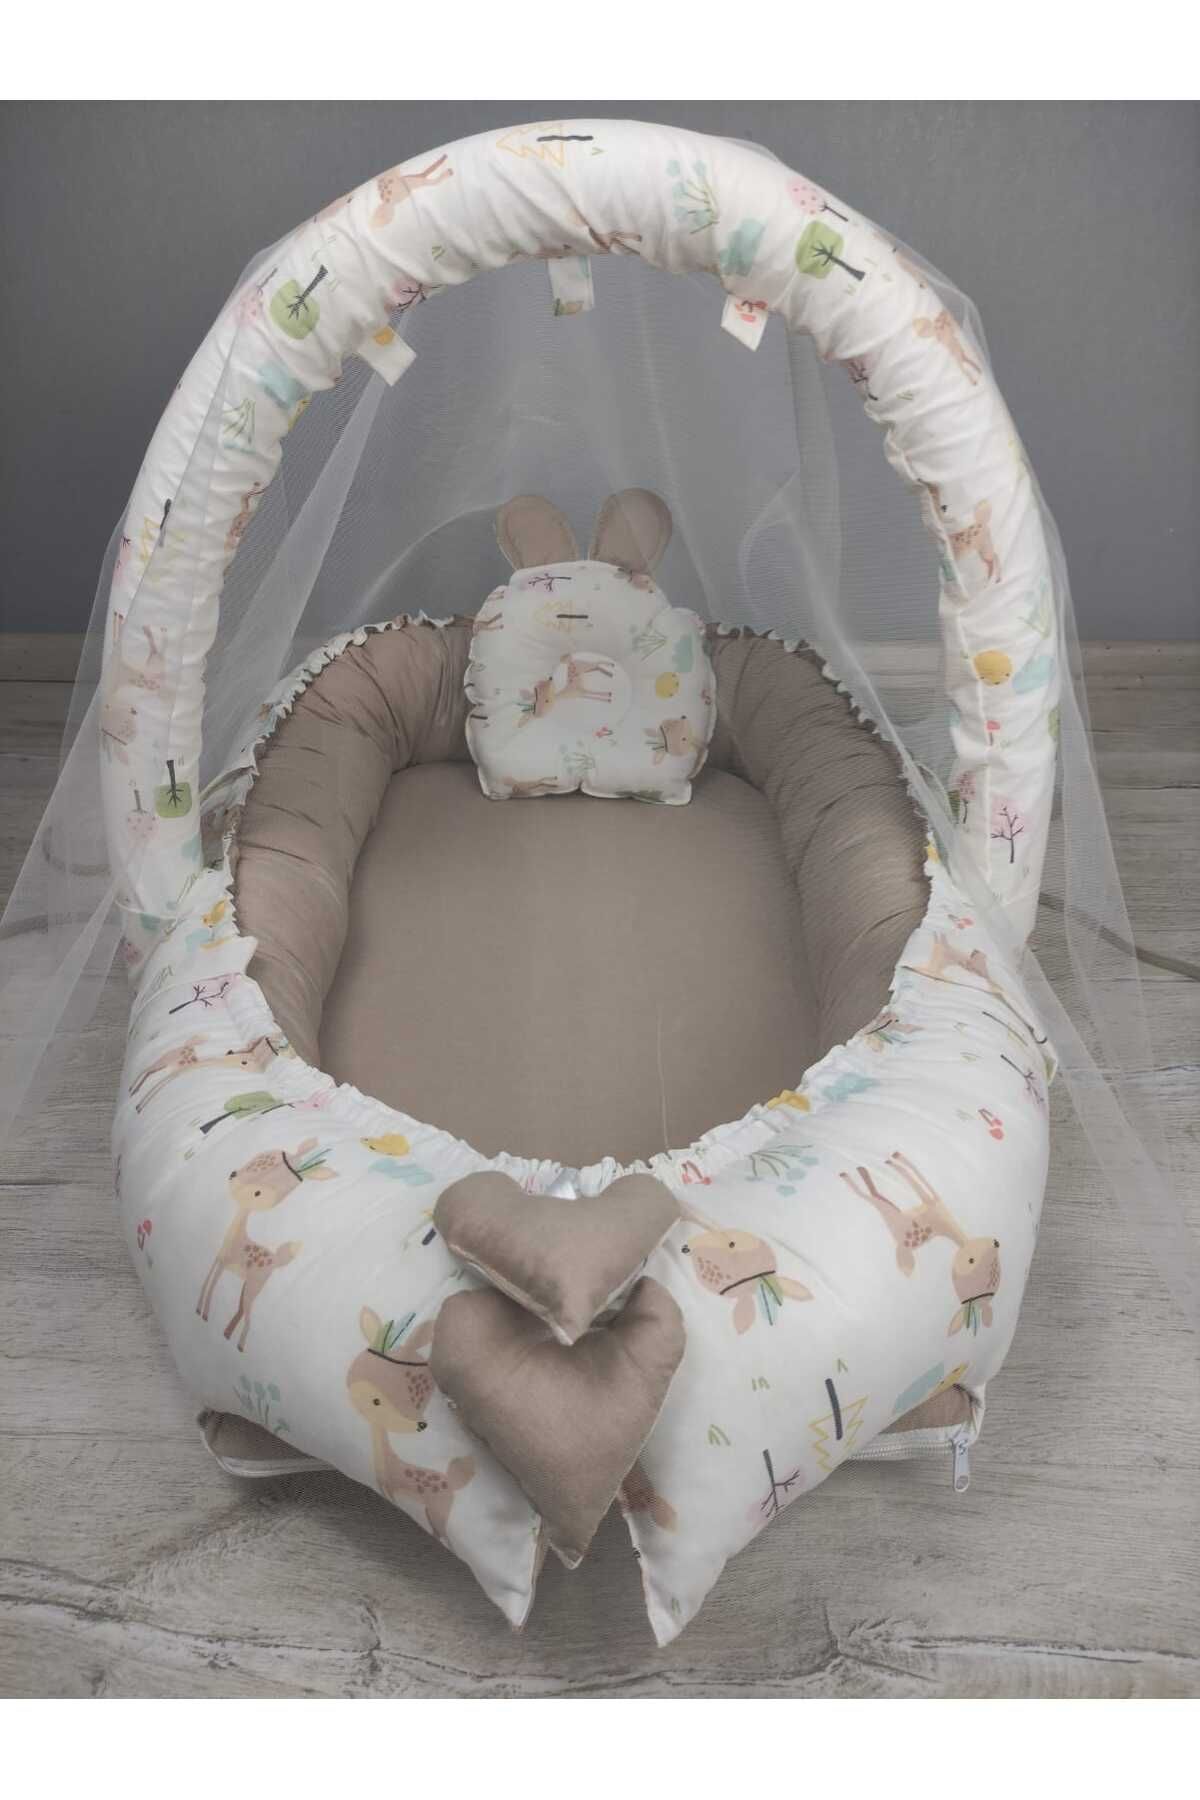 BABYNEST SEPETi Babynest, Cibinlik ve Oyuncak Asma Aparatı Tatlı Karaca Desen ve Bej Kombin Orijinal Bebek Yatağı